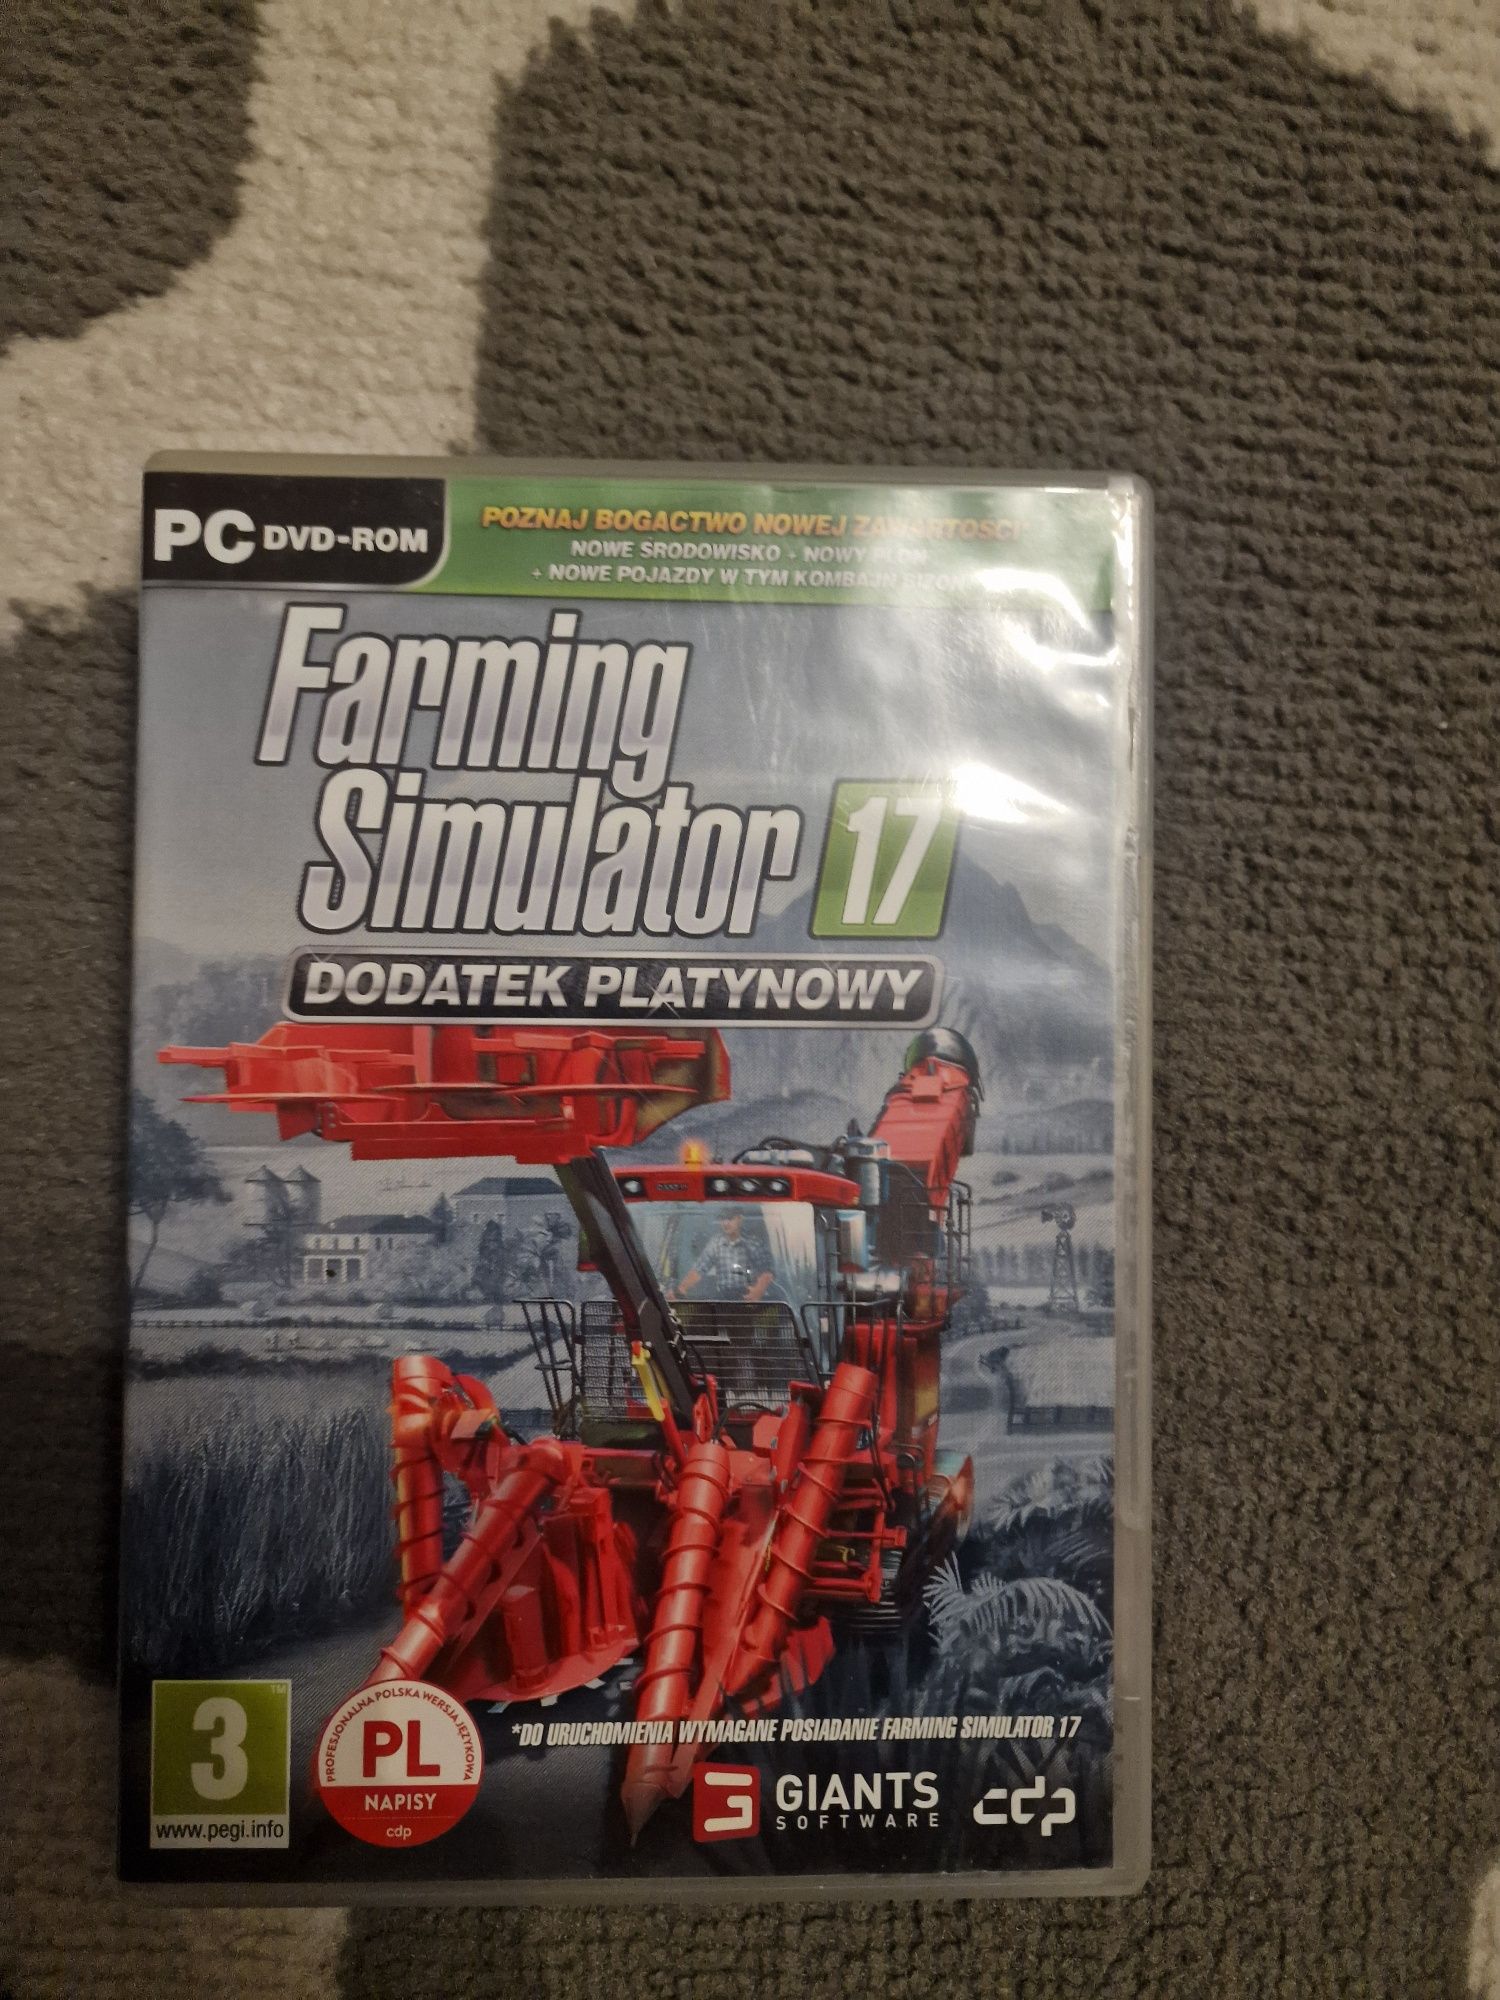 Farming simulator 17 Dodatek platynowy